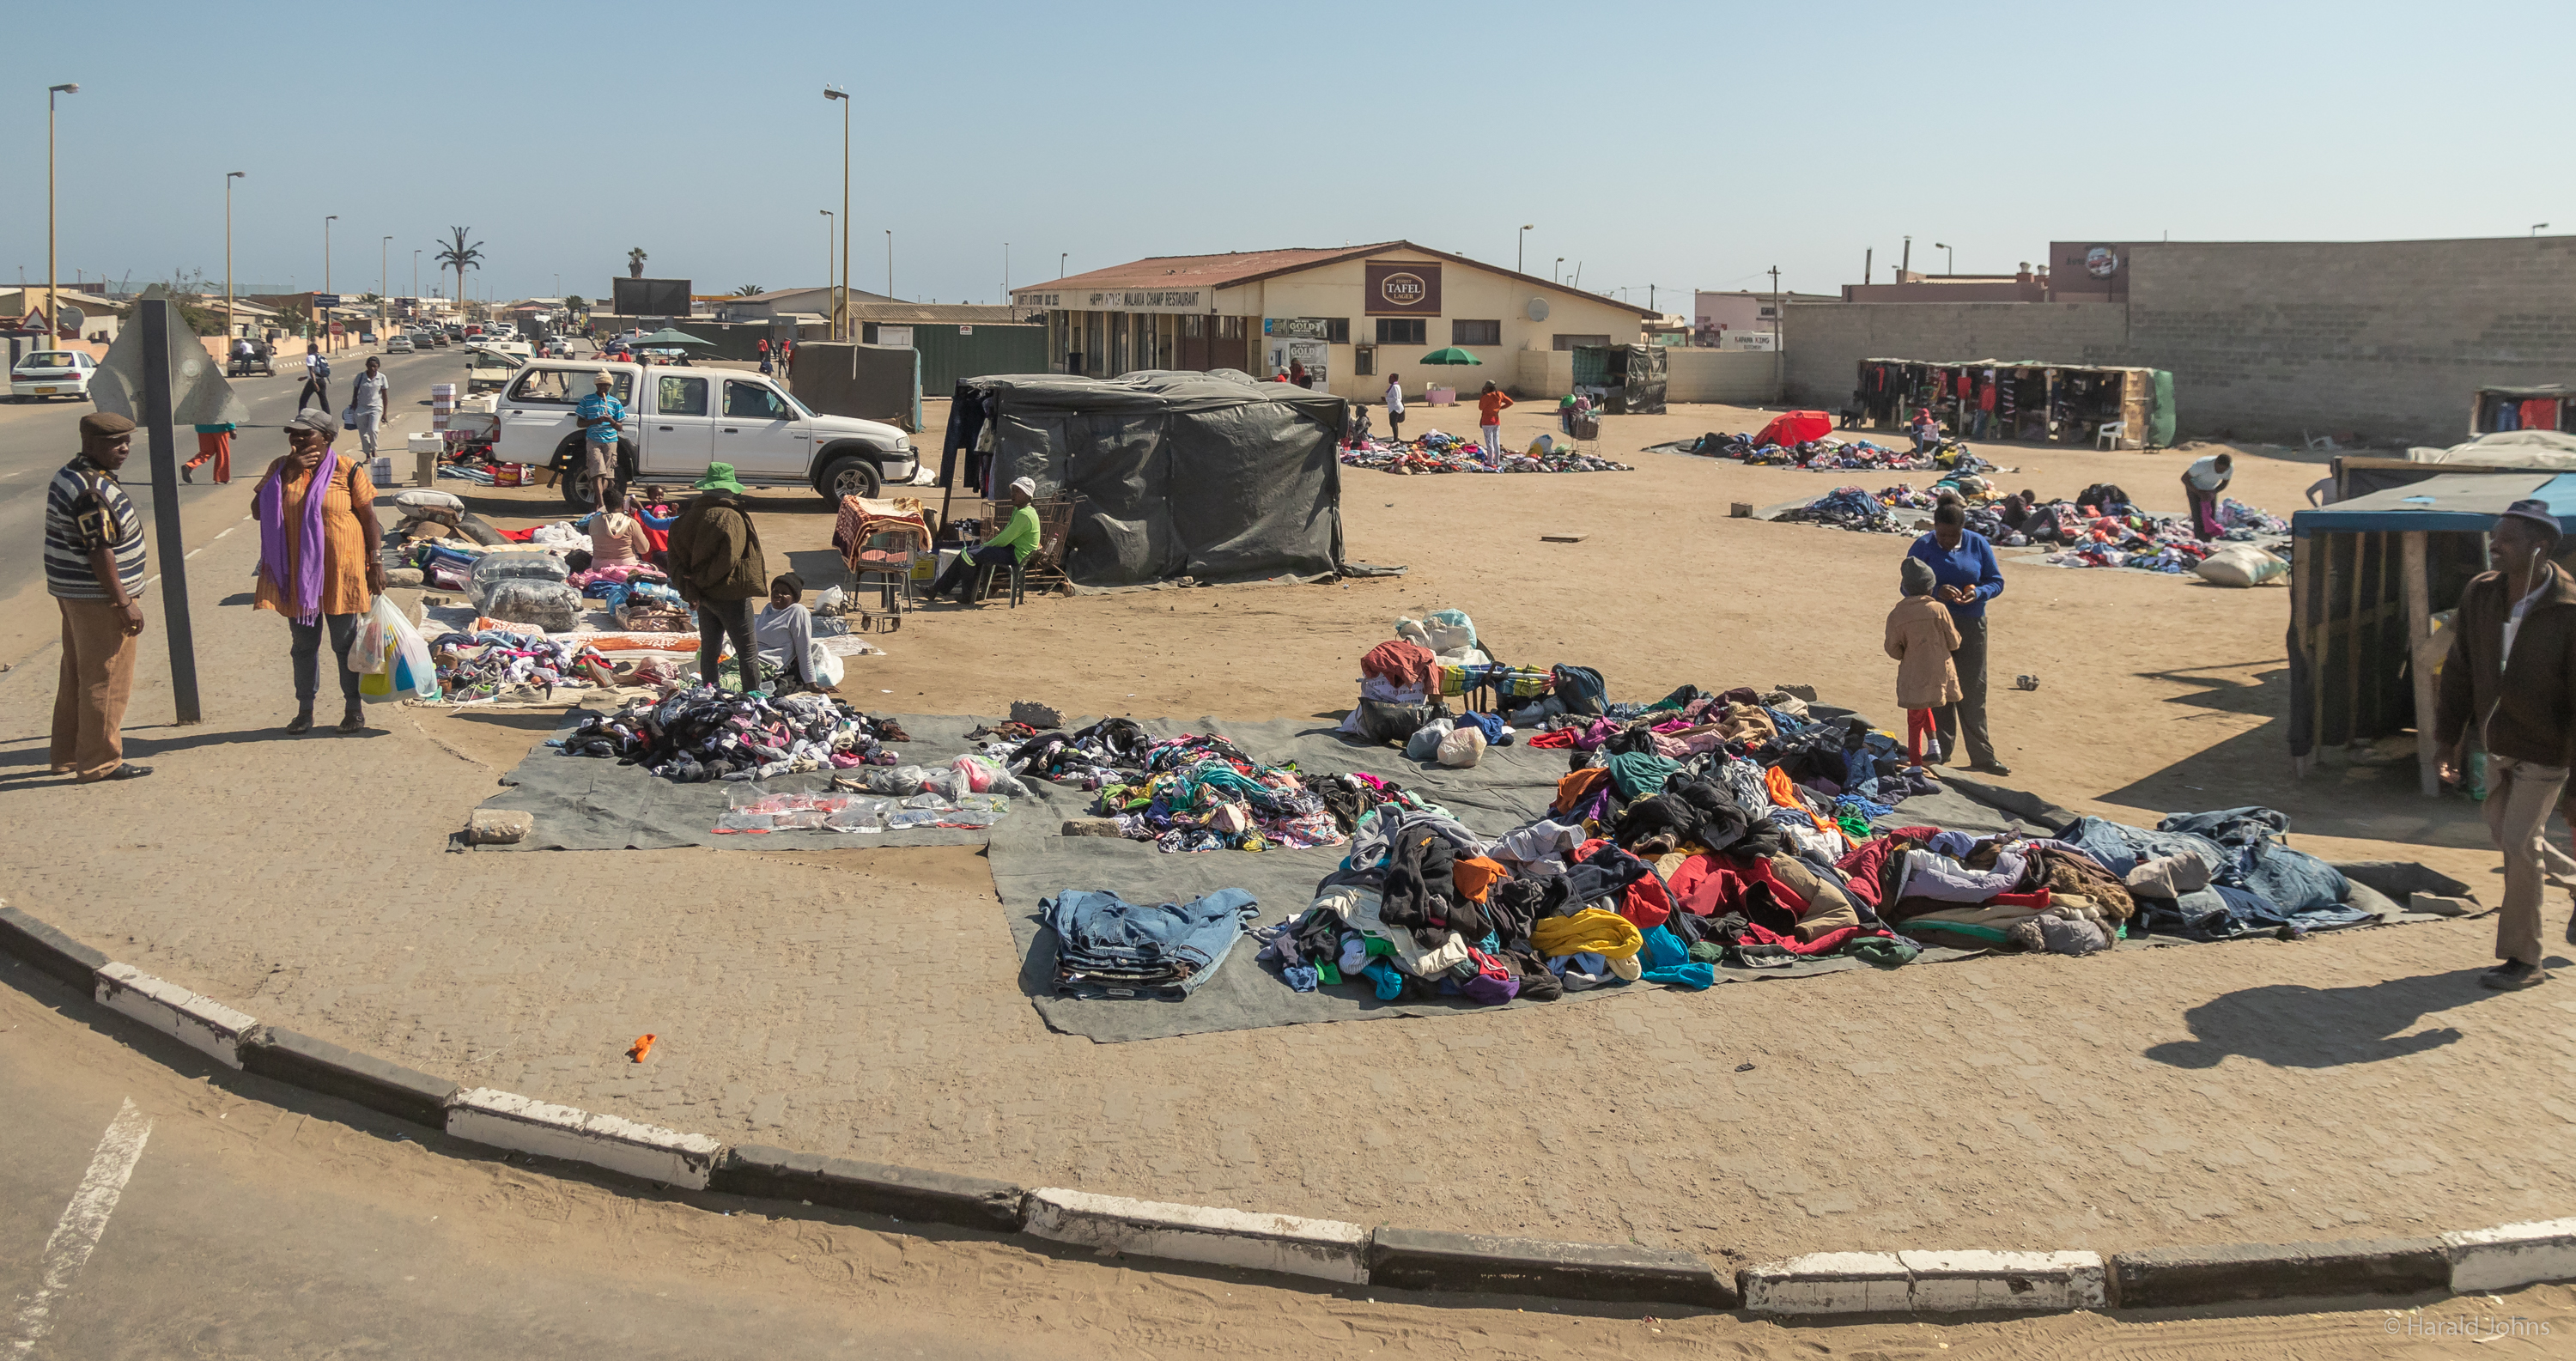 Straßenverkauf von Kleidung im ärmsten Stadtteil Mondesas in Swakopmund